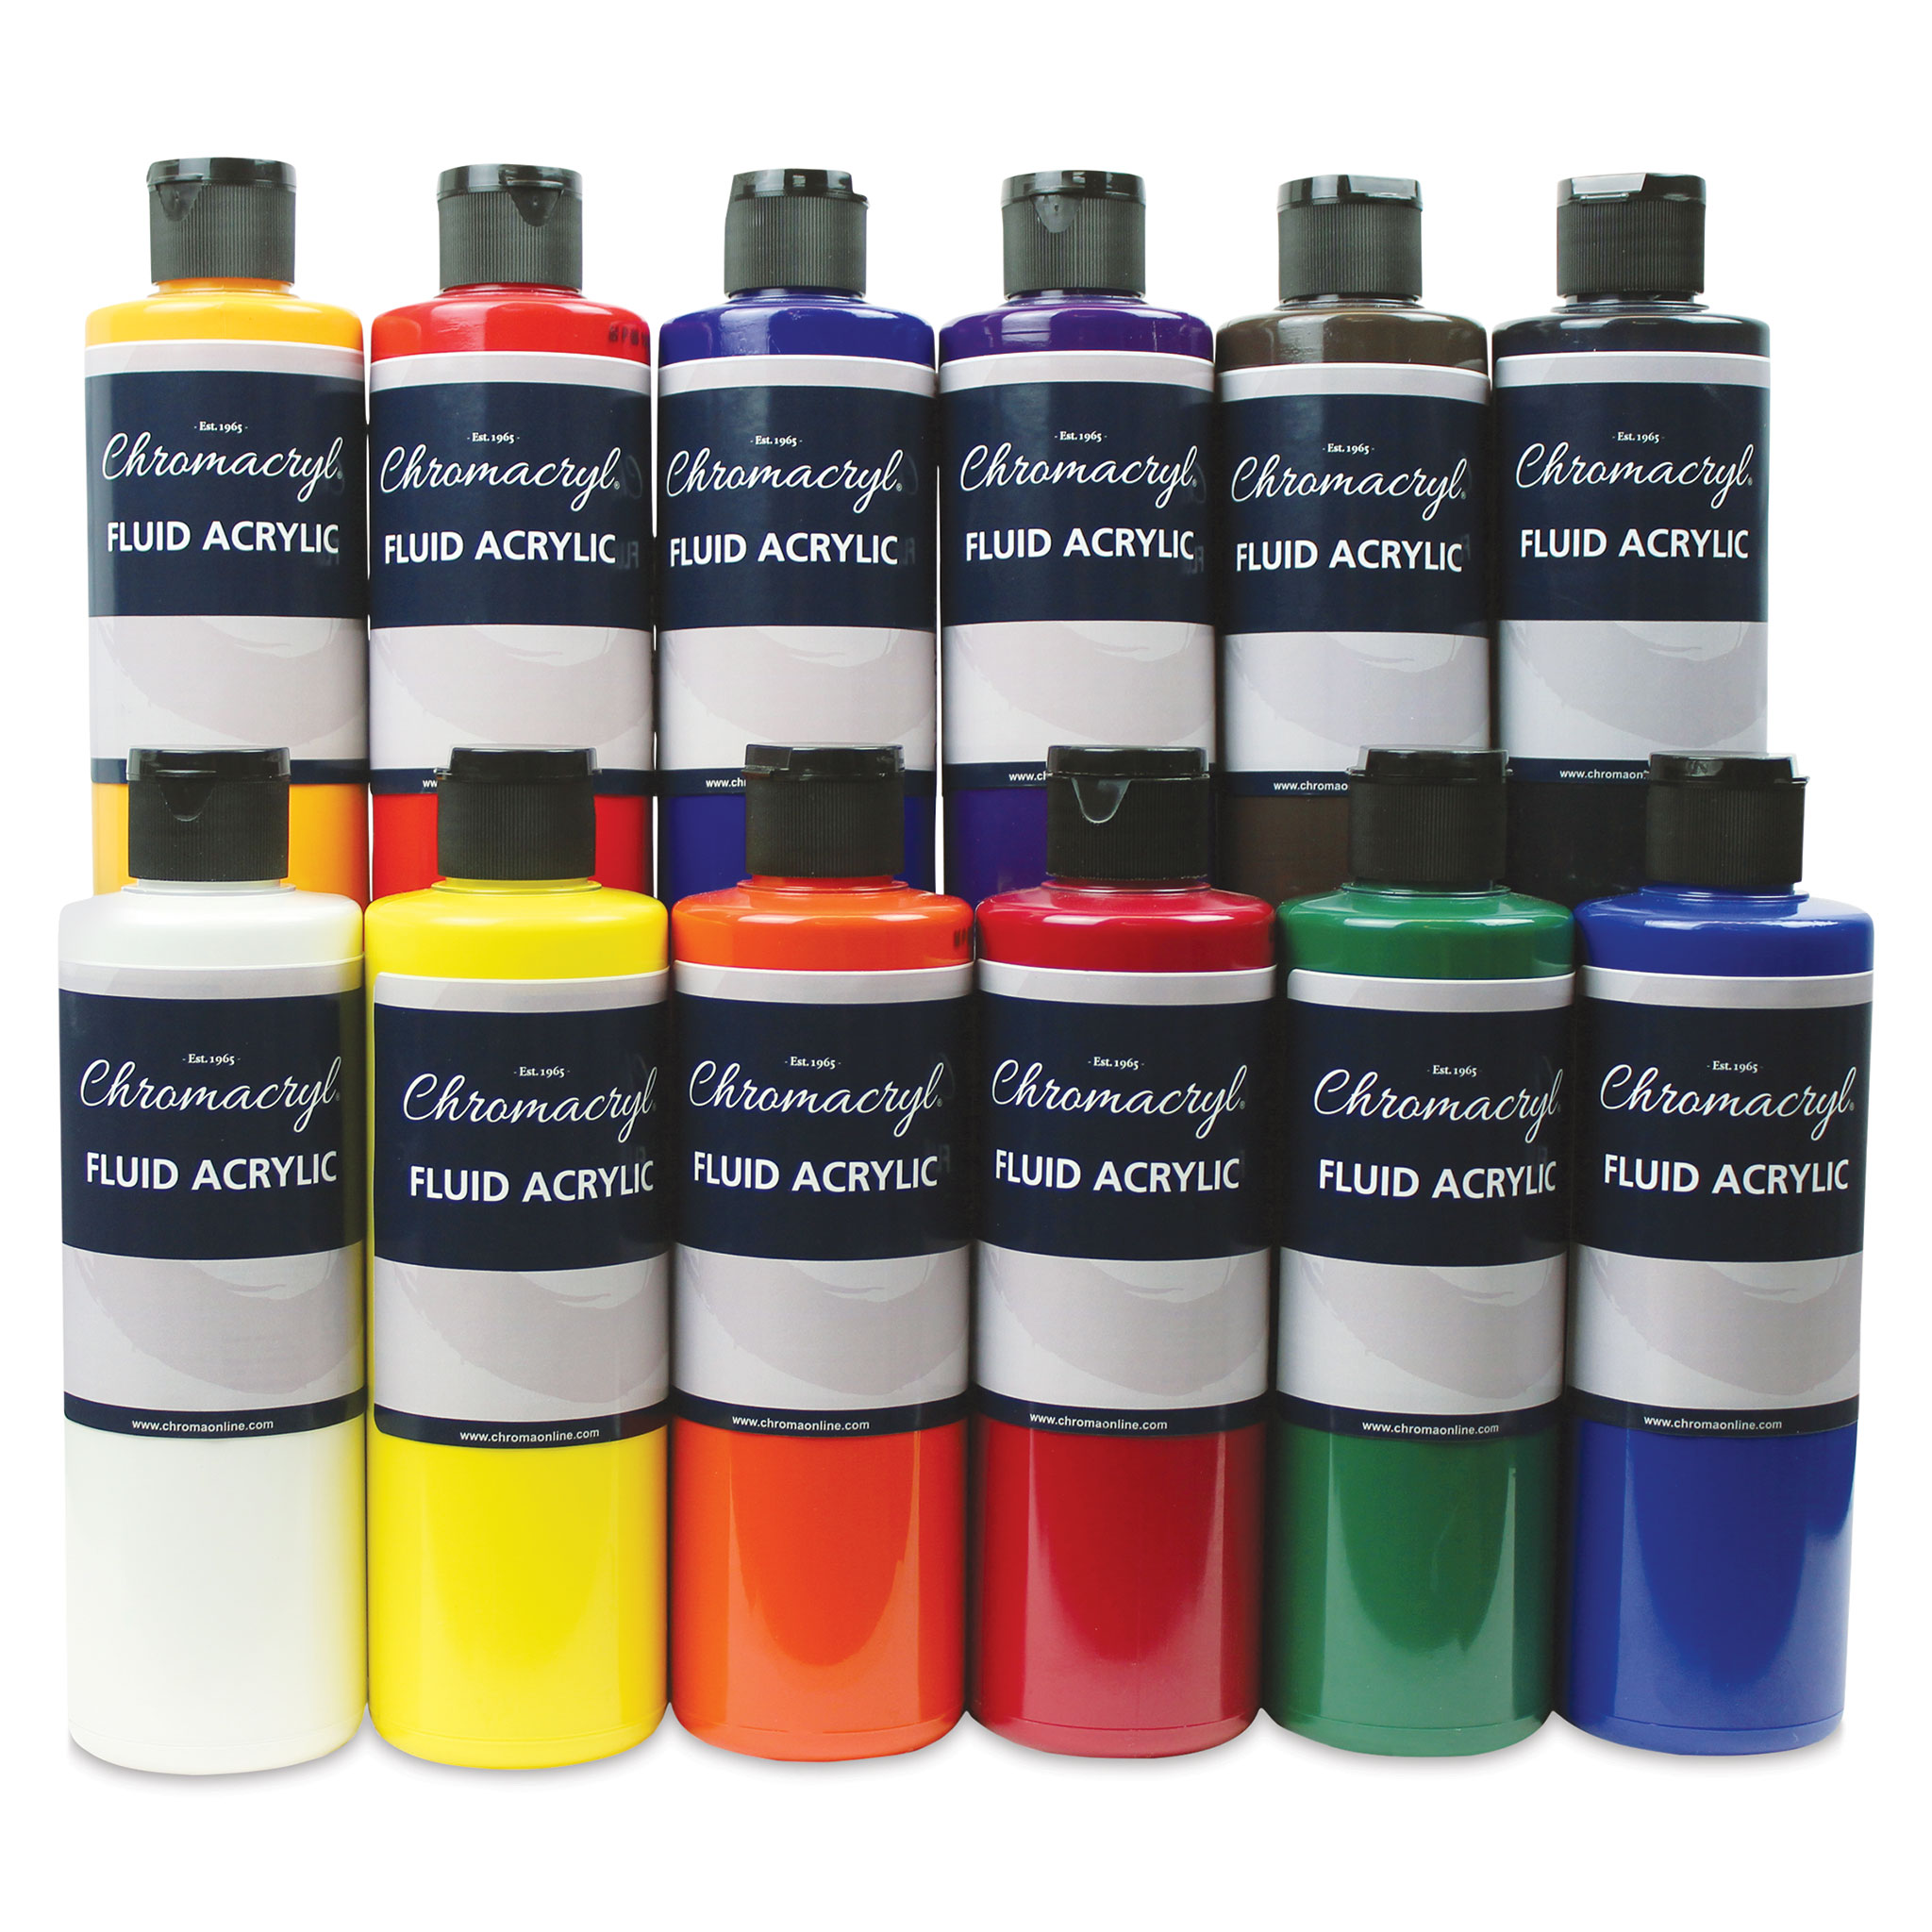 Chromacryl Fluid Acrylic Paints